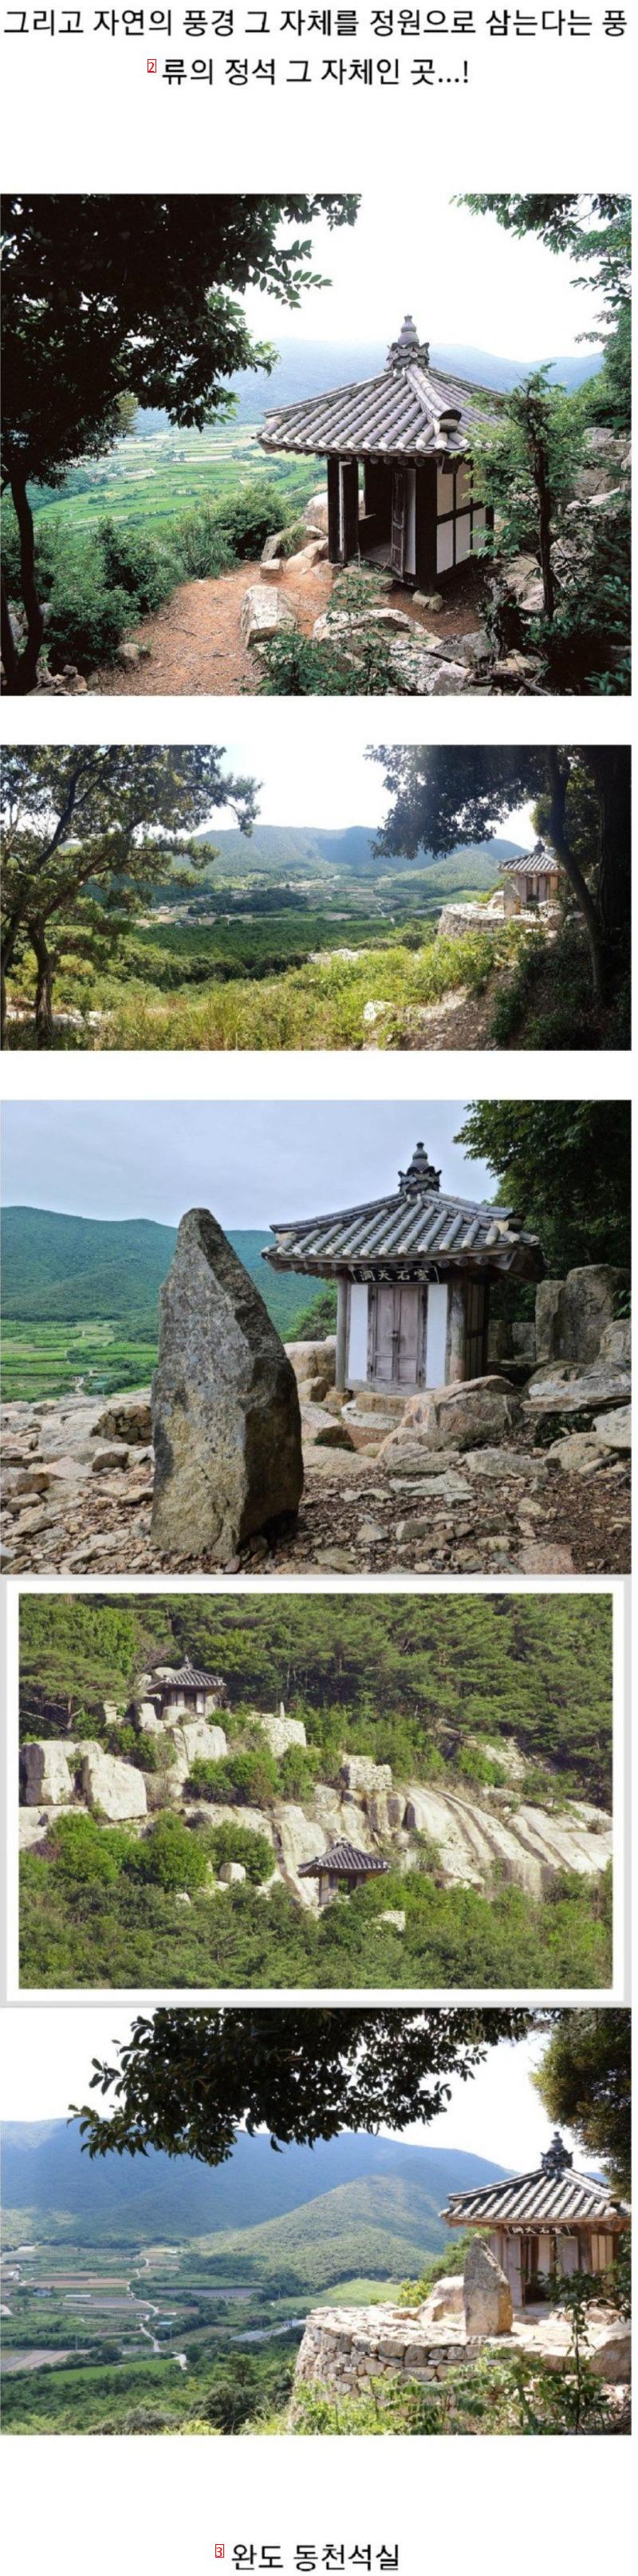 韓国人もよく知らない韓国式伝統庭園